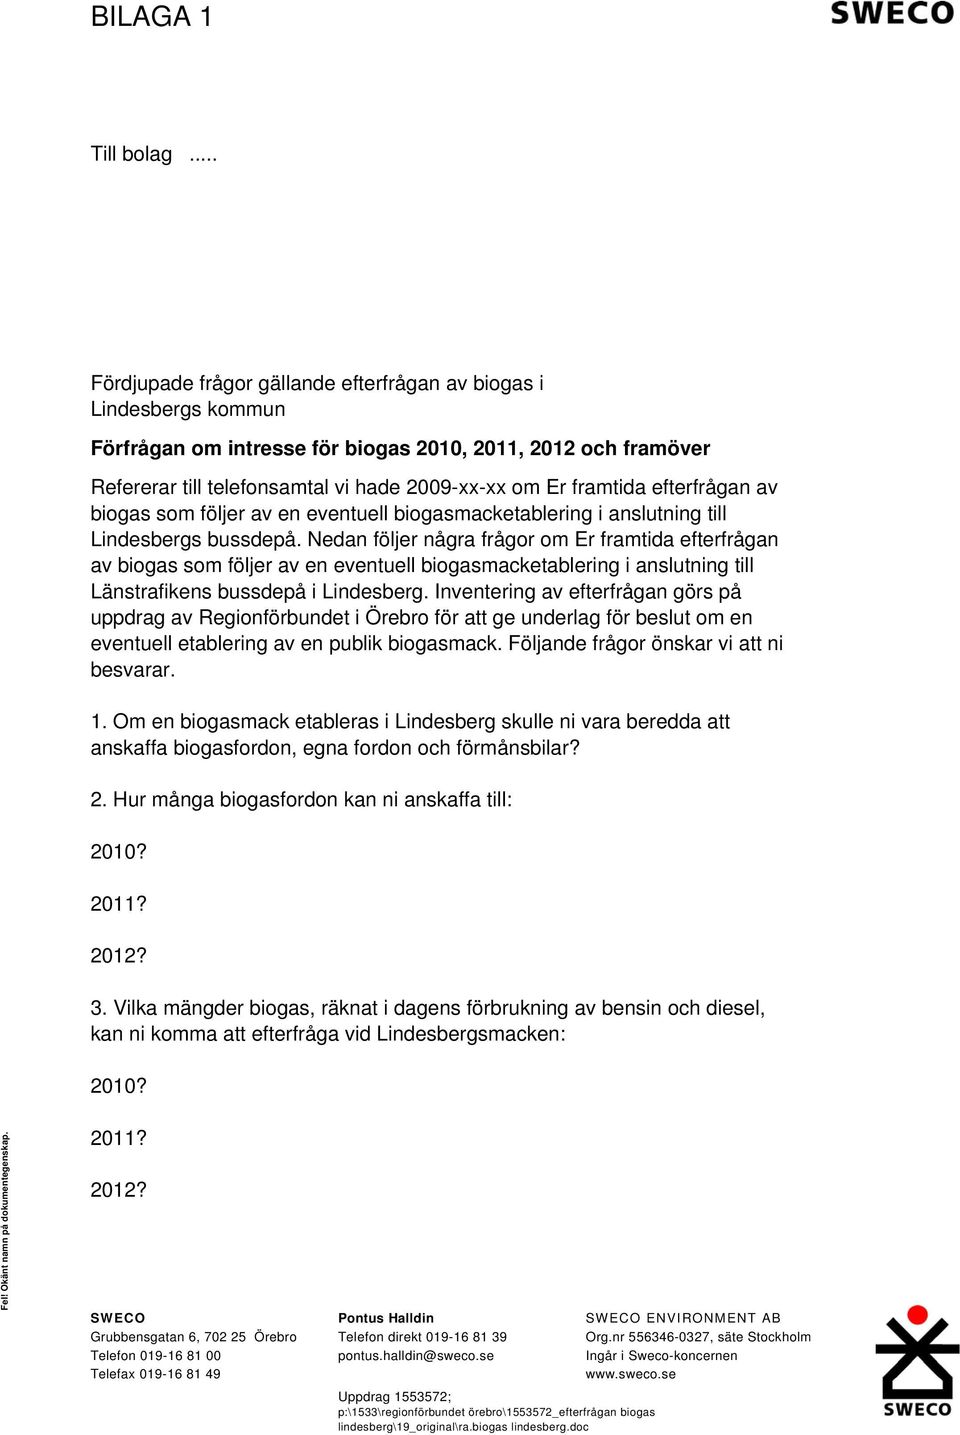 efterfrågan av biogas som följer av en eventuell biogasmacketablering i anslutning till Lindesbergs bussdepå.